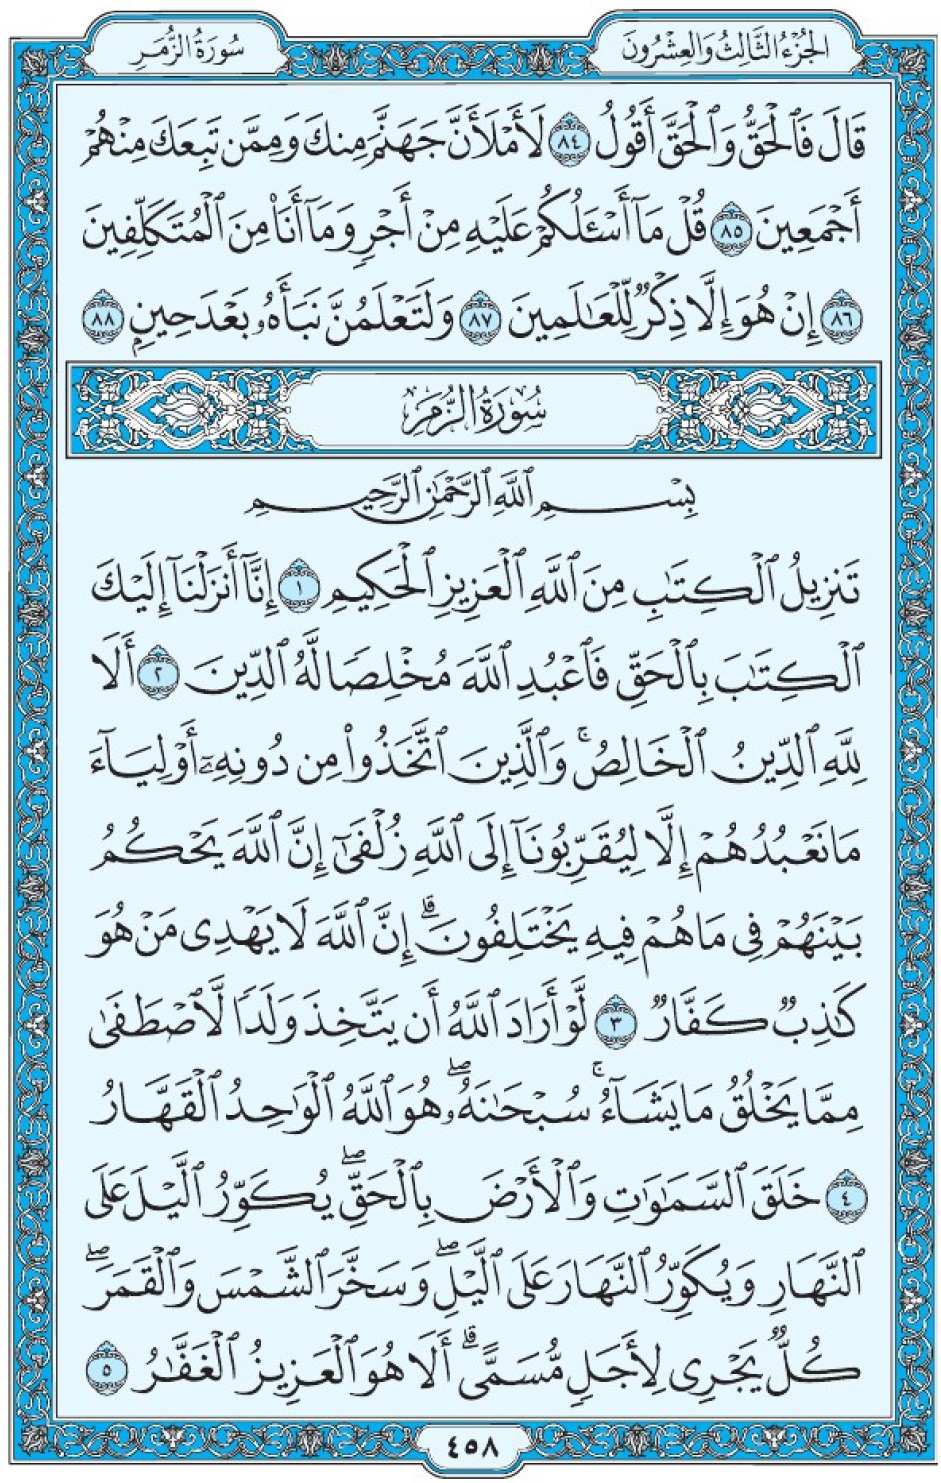 Коран Мединский мусхаф страница 458, сура 39 Аз-Зумар سورة ٣٩ الزمر 